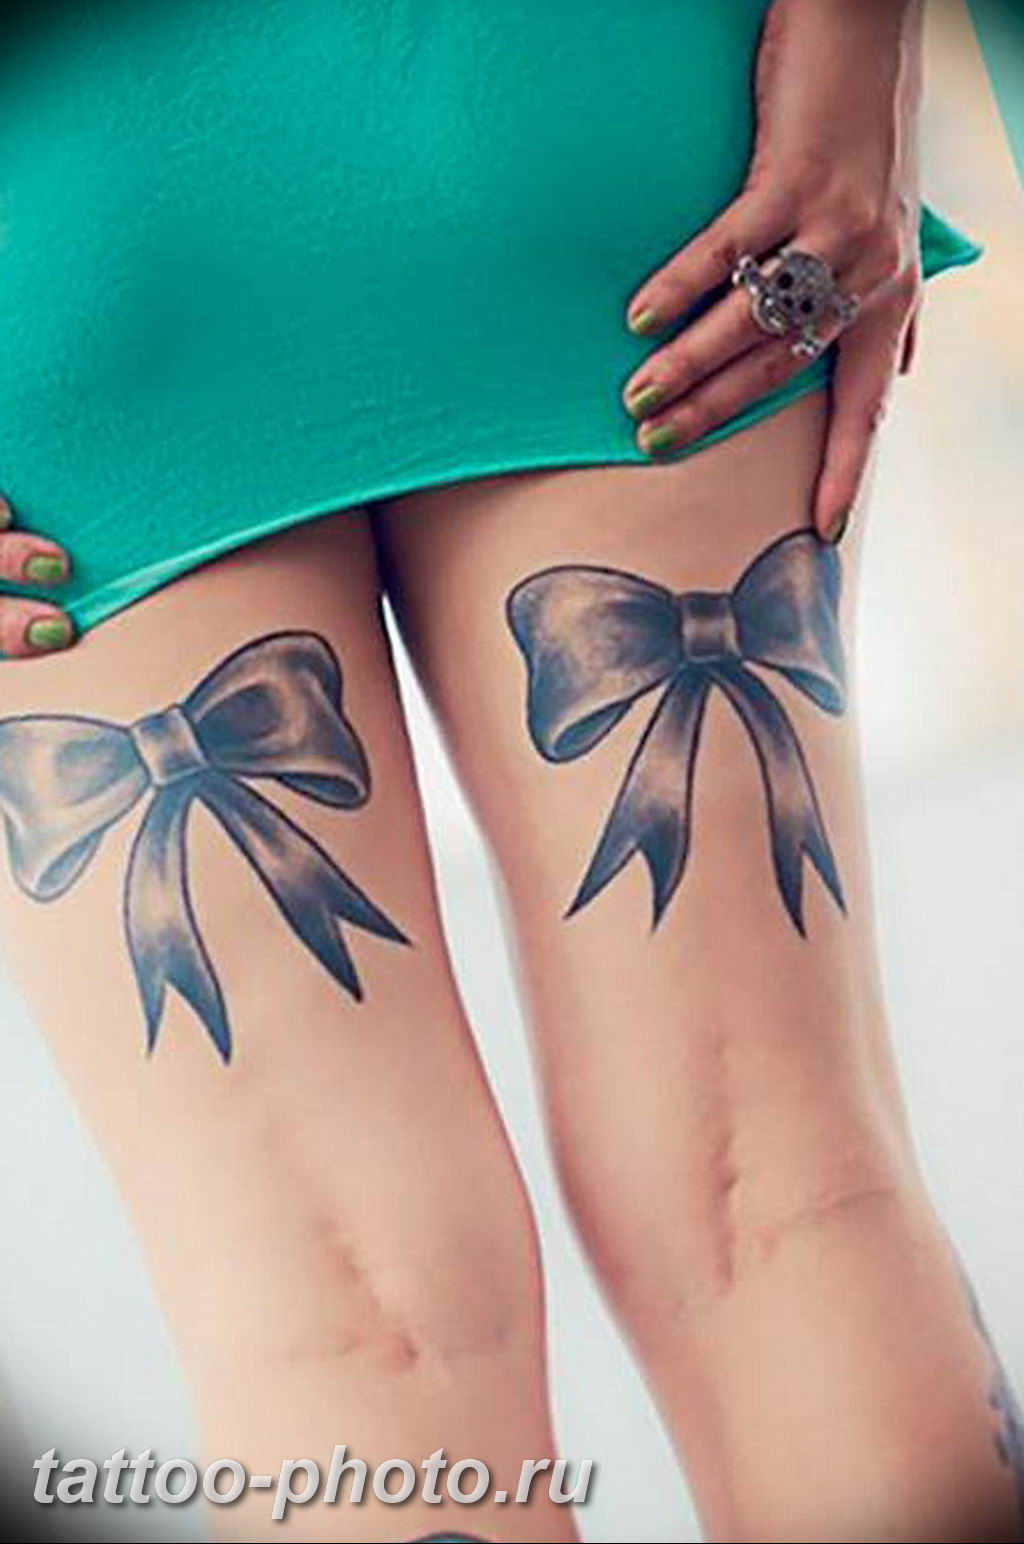 Как ухаживать за татуировкой на ноге?